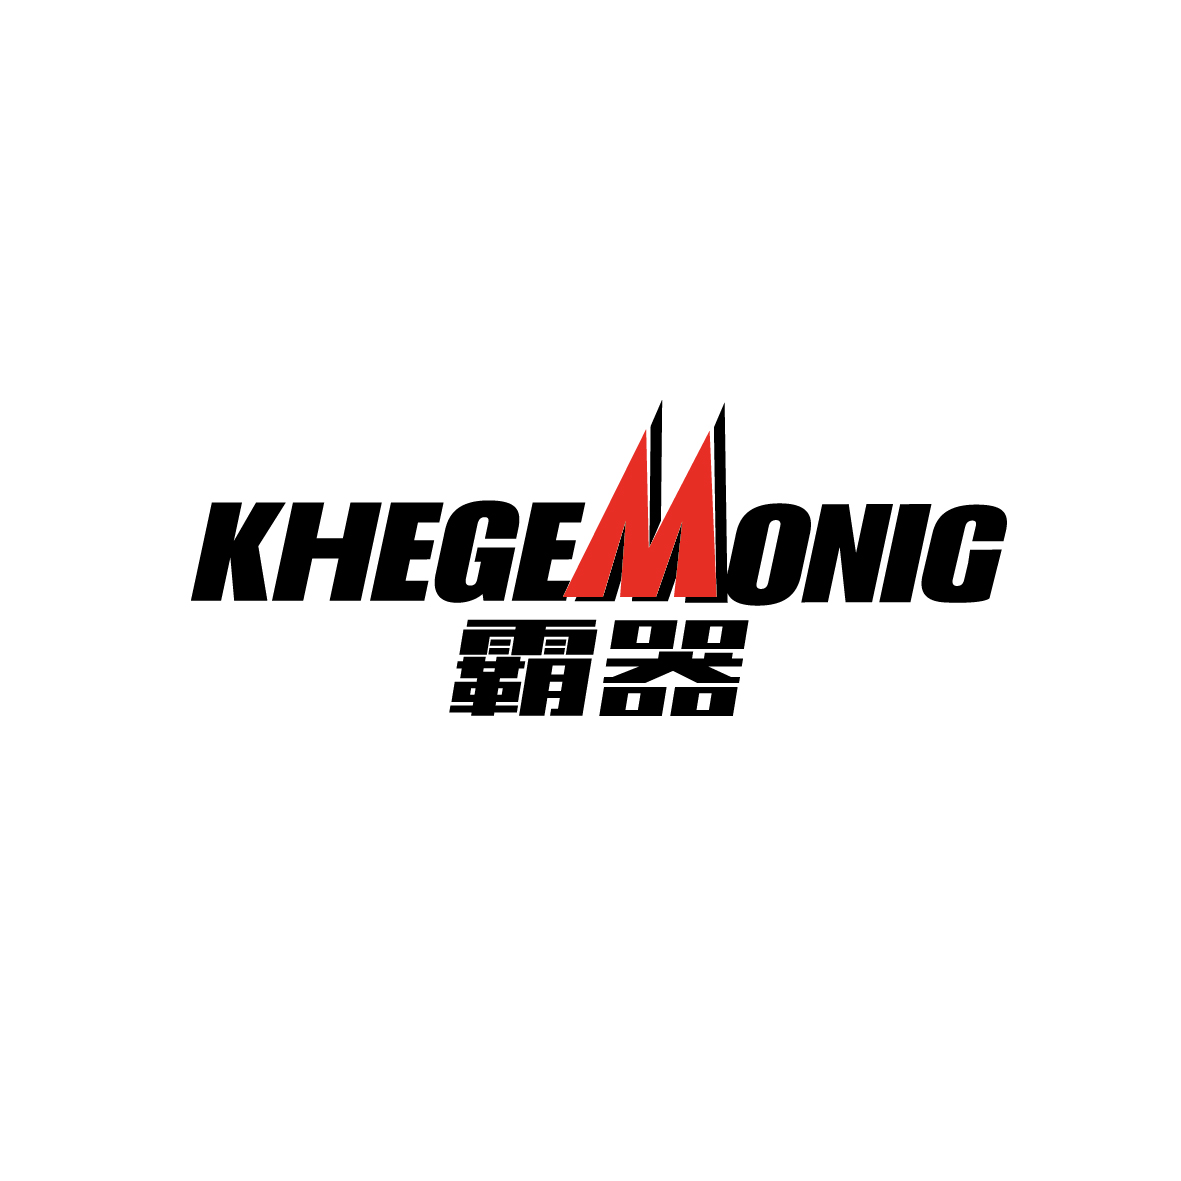 广州市君衍电子商务商行商标霸器 KHEGEMONIC（37类）商标买卖平台报价，上哪个平台最省钱？